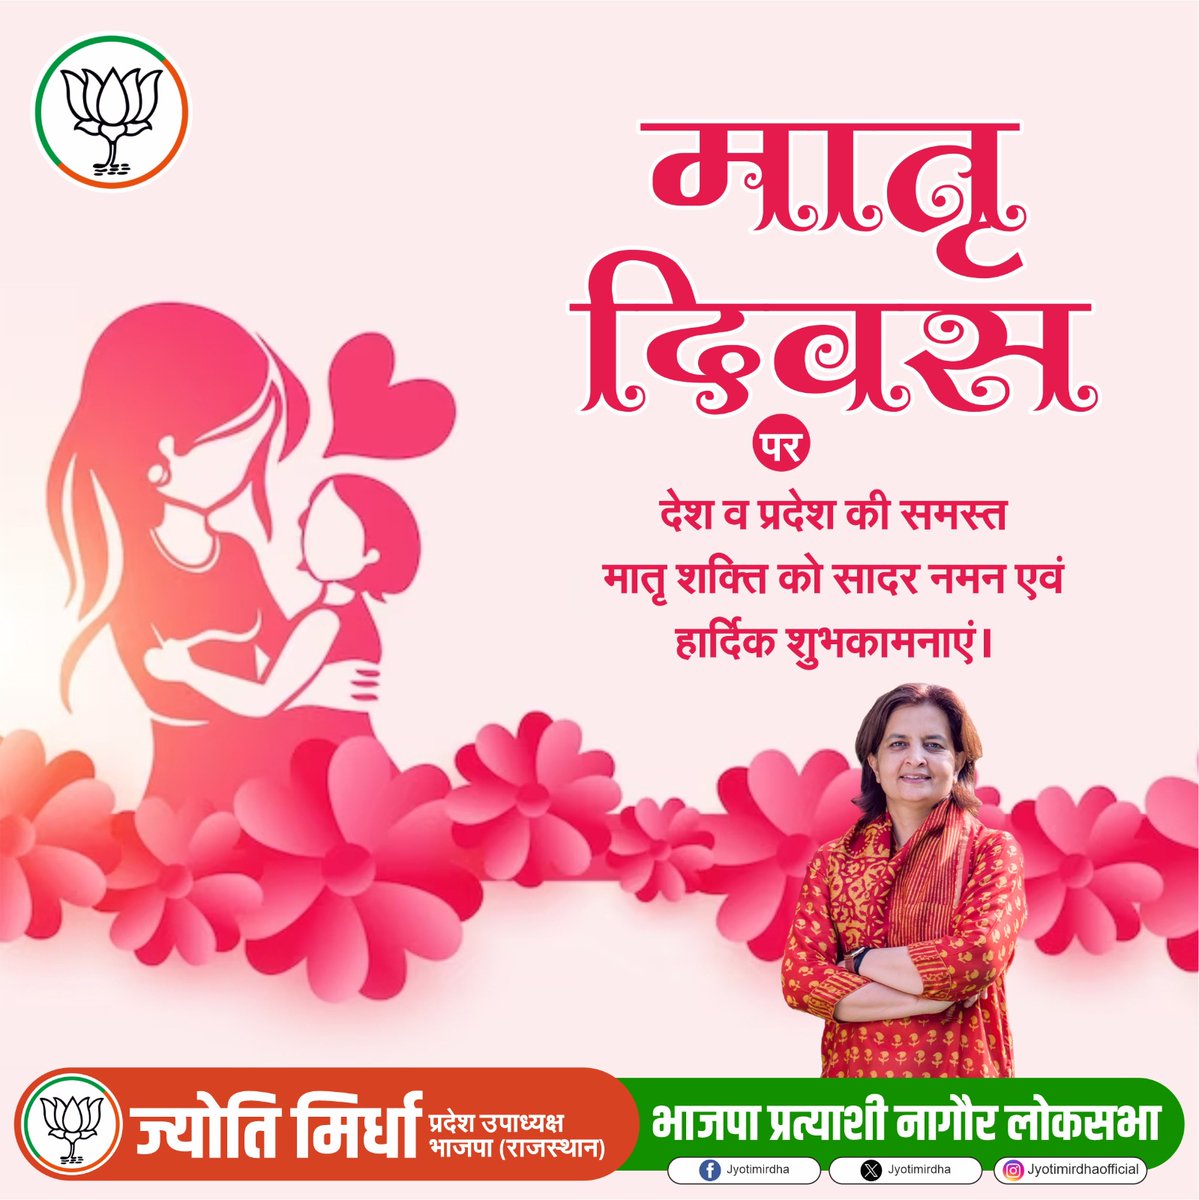 मातृ दिवस पर देश व प्रदेश की समस्त मातृ शक्ति को सादर नमन एवं हार्दिक शुभकामनाएं ।
#mothersday2024